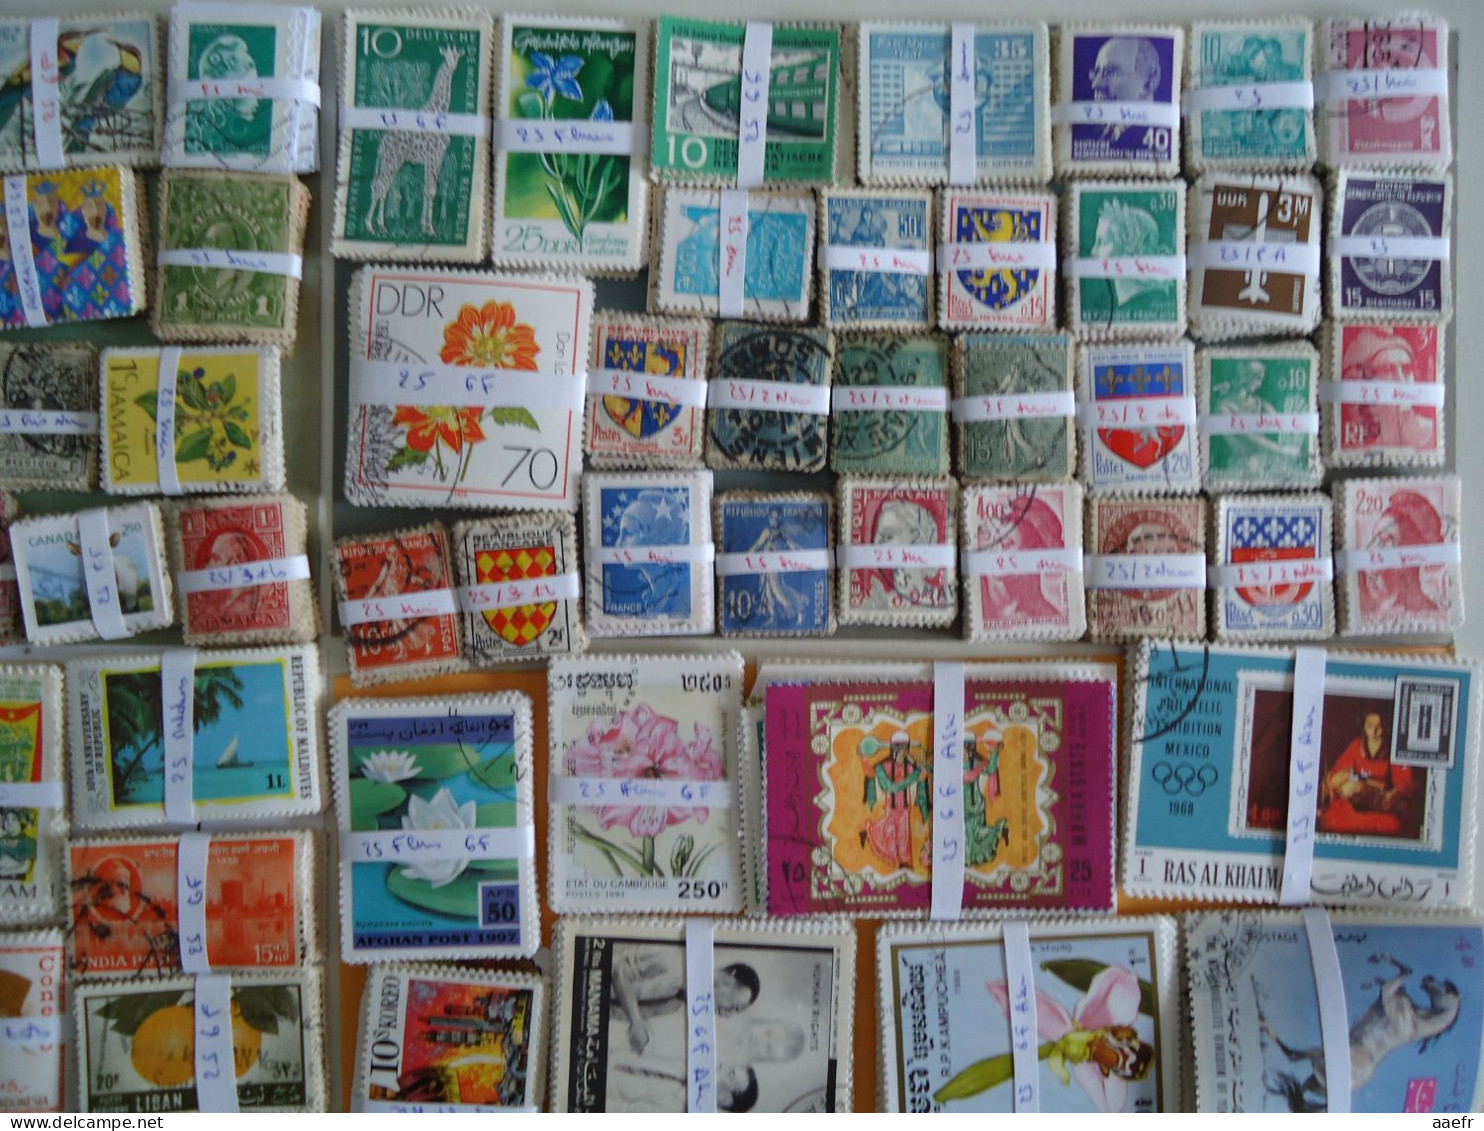 Monde / World - 11250 timbres en 450 bottes de 25  / 11250 stamps in 450 bundles of 25